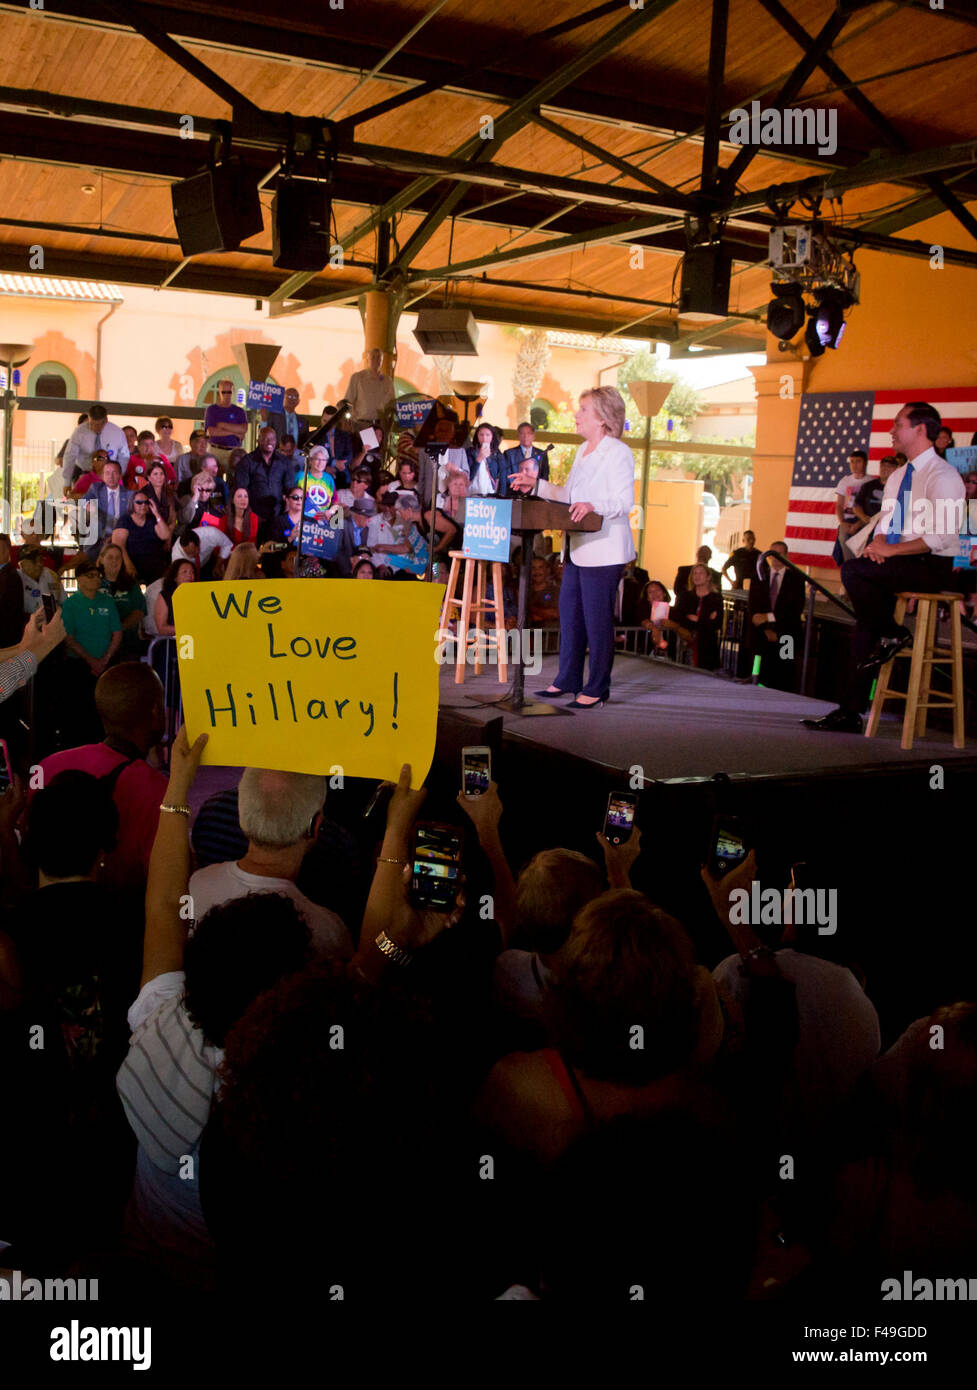 US demokratische Präsidentschaftswahlen hoffnungsvollen Hillary Clinton grüßt Fans während einer Kampagne Stop in Texas Stockfoto